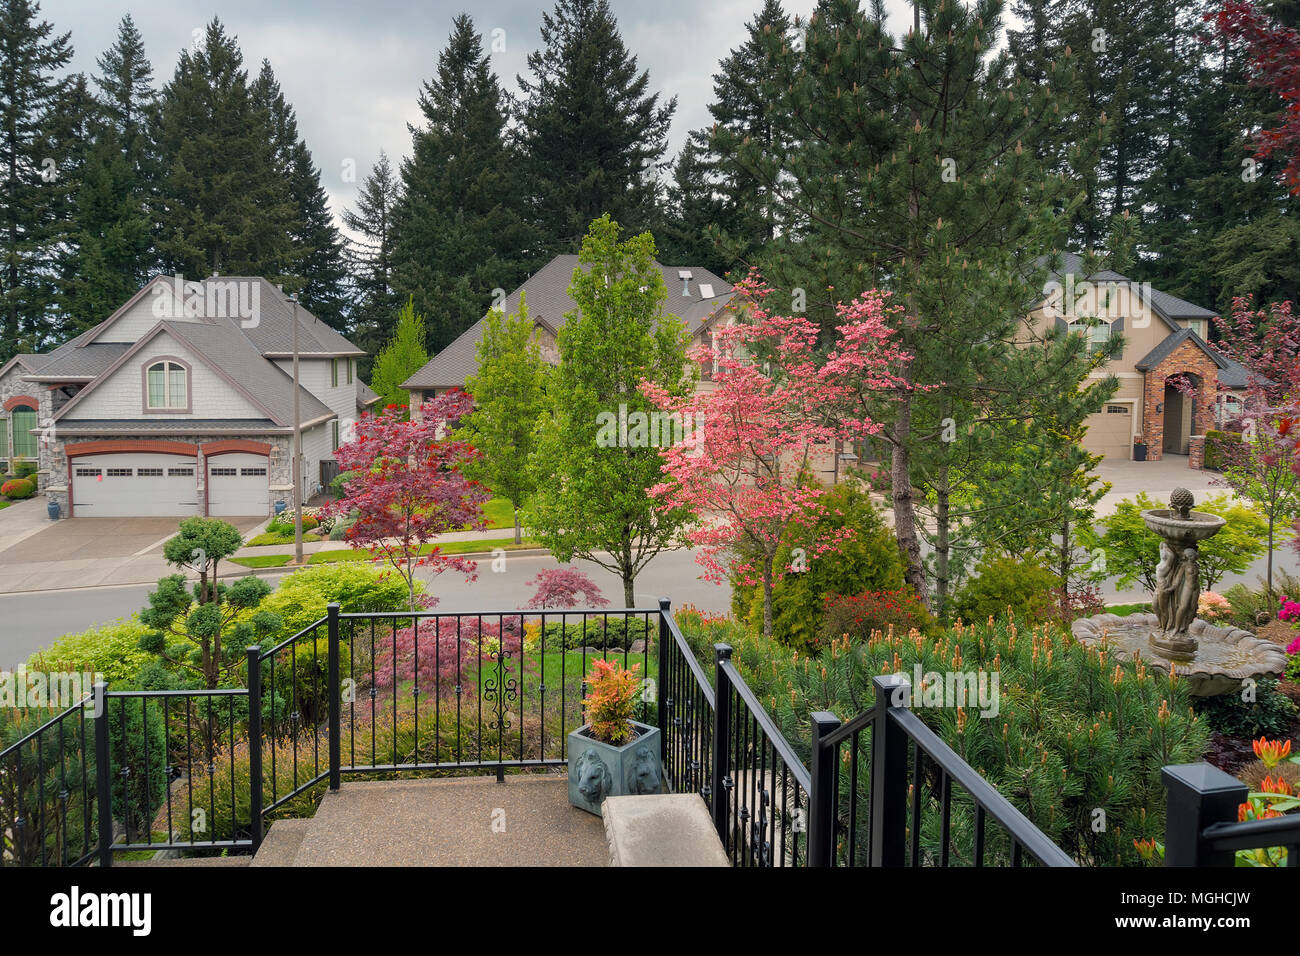 Home ingresso cortile anteriore prato giardino paesaggistico con ringhiere fontana acqua alberi fioriti e plnats nella stagione primaverile Foto Stock